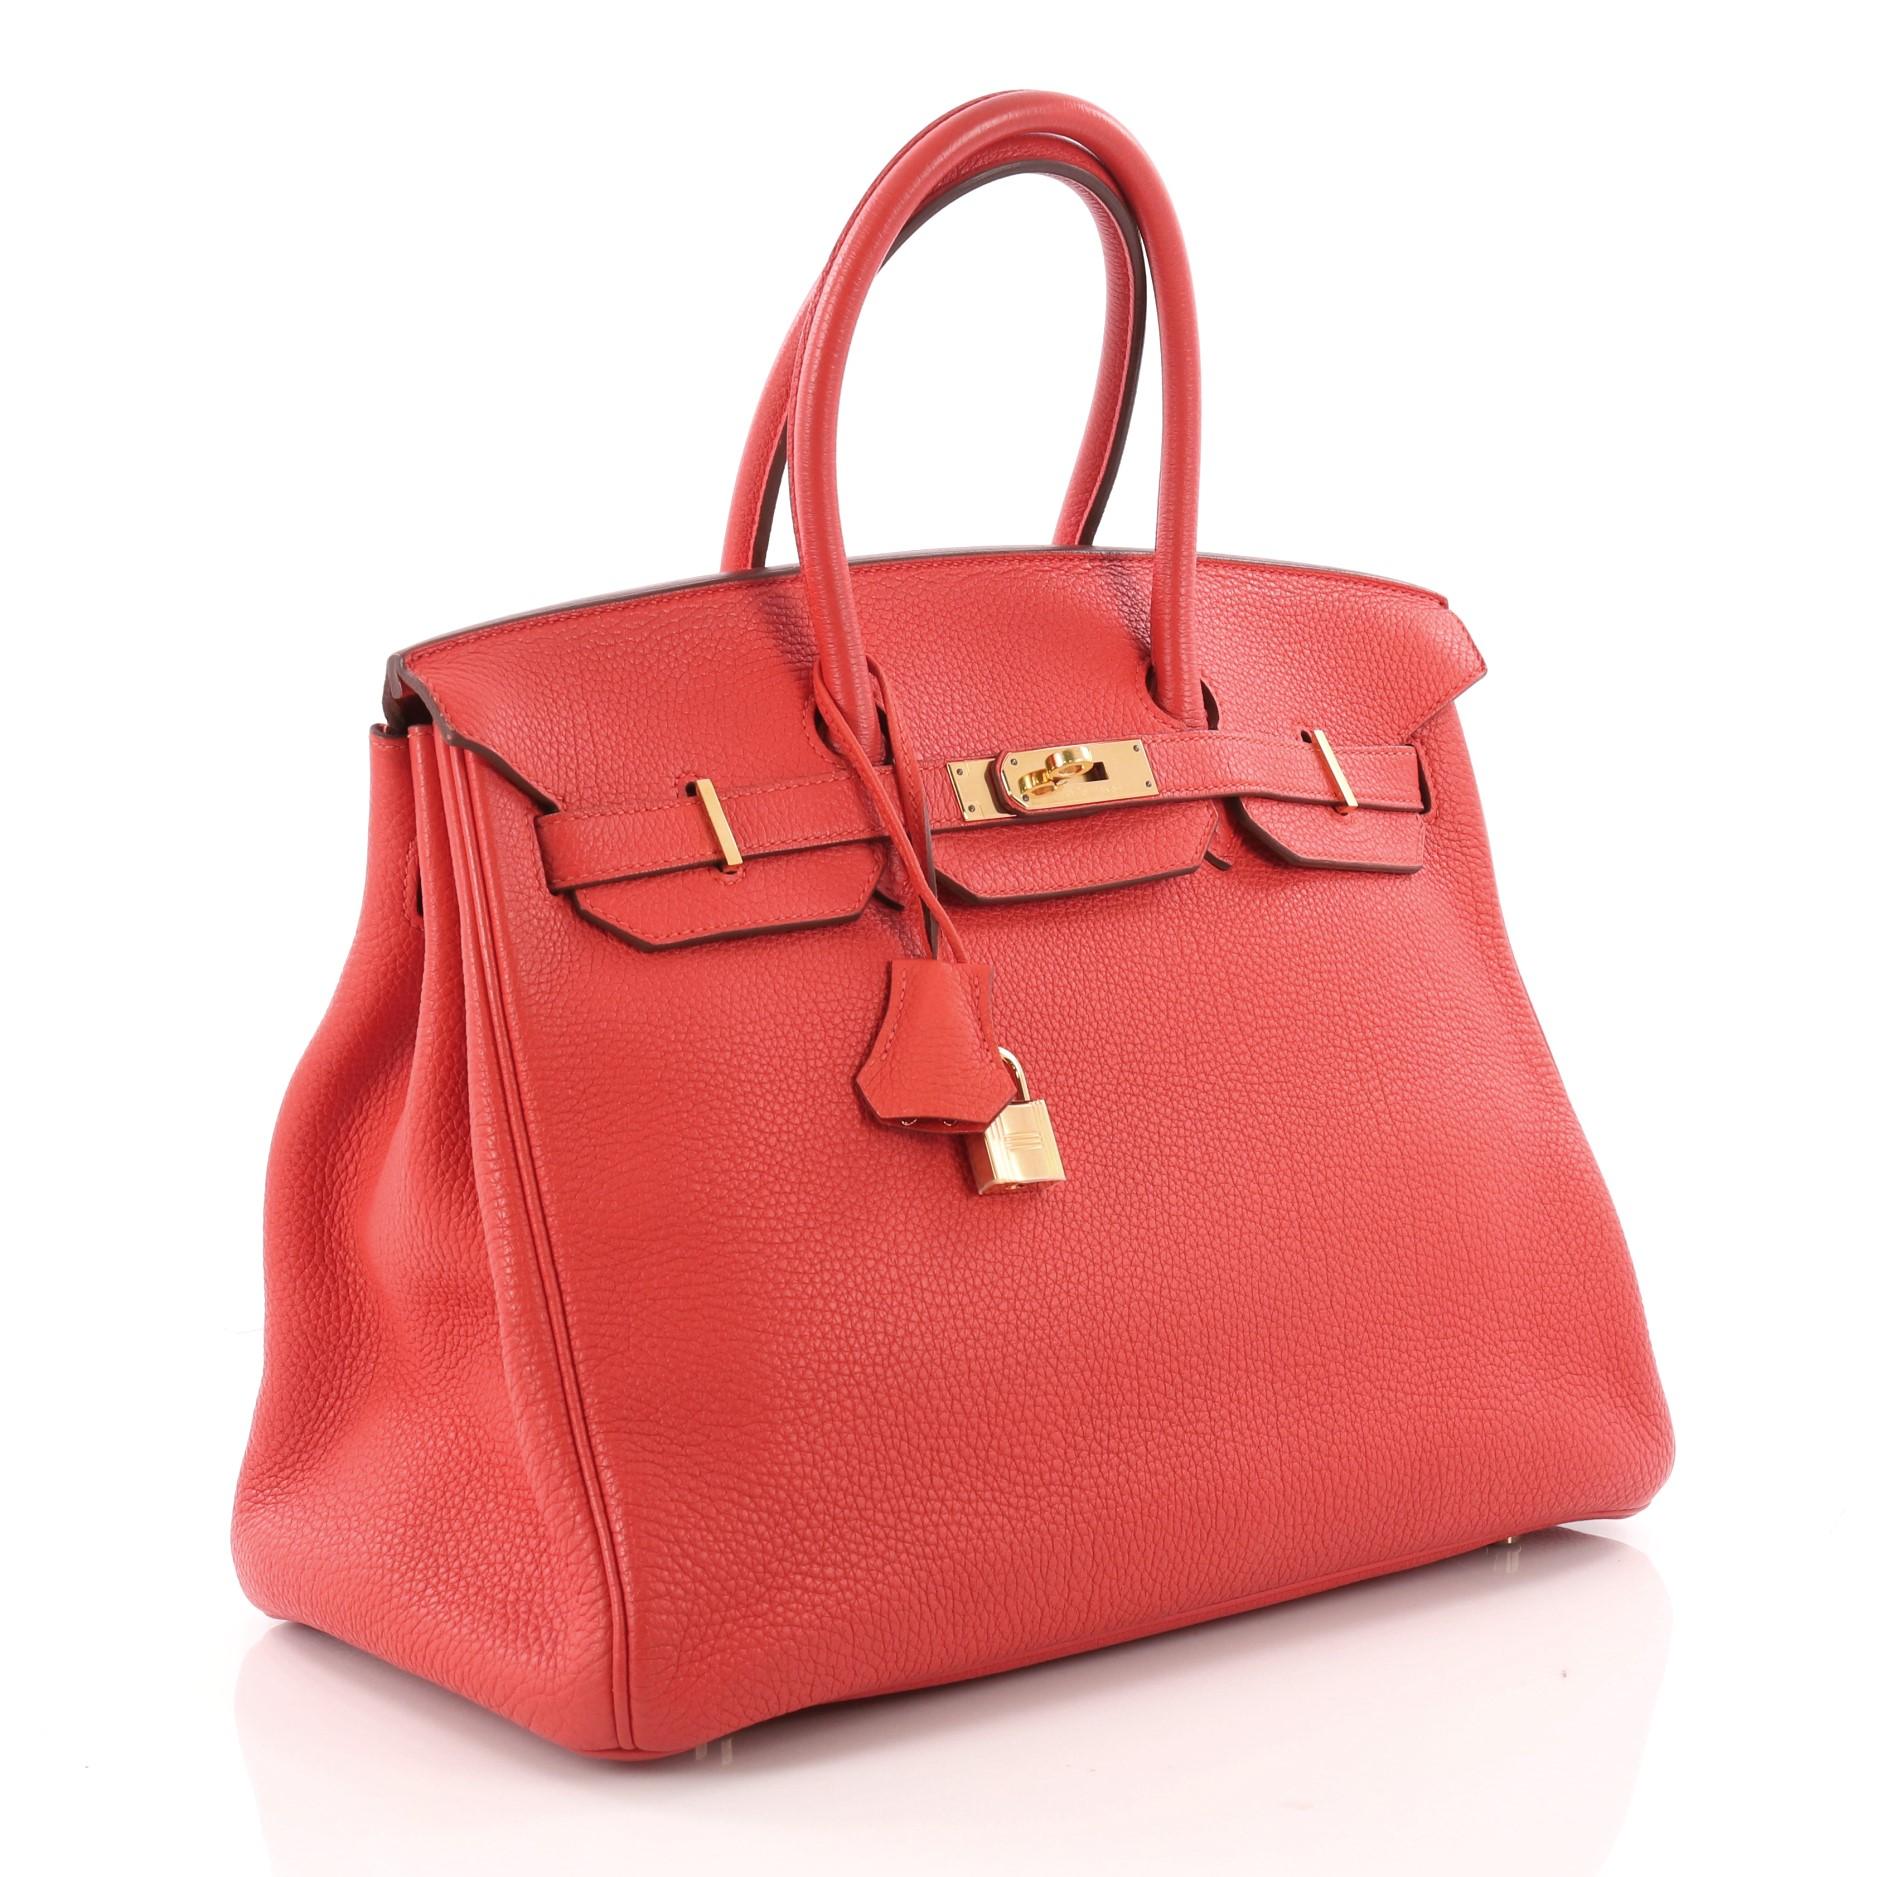 Red Hermes Birkin Handbag Feu Togo with Gold Hardware 35